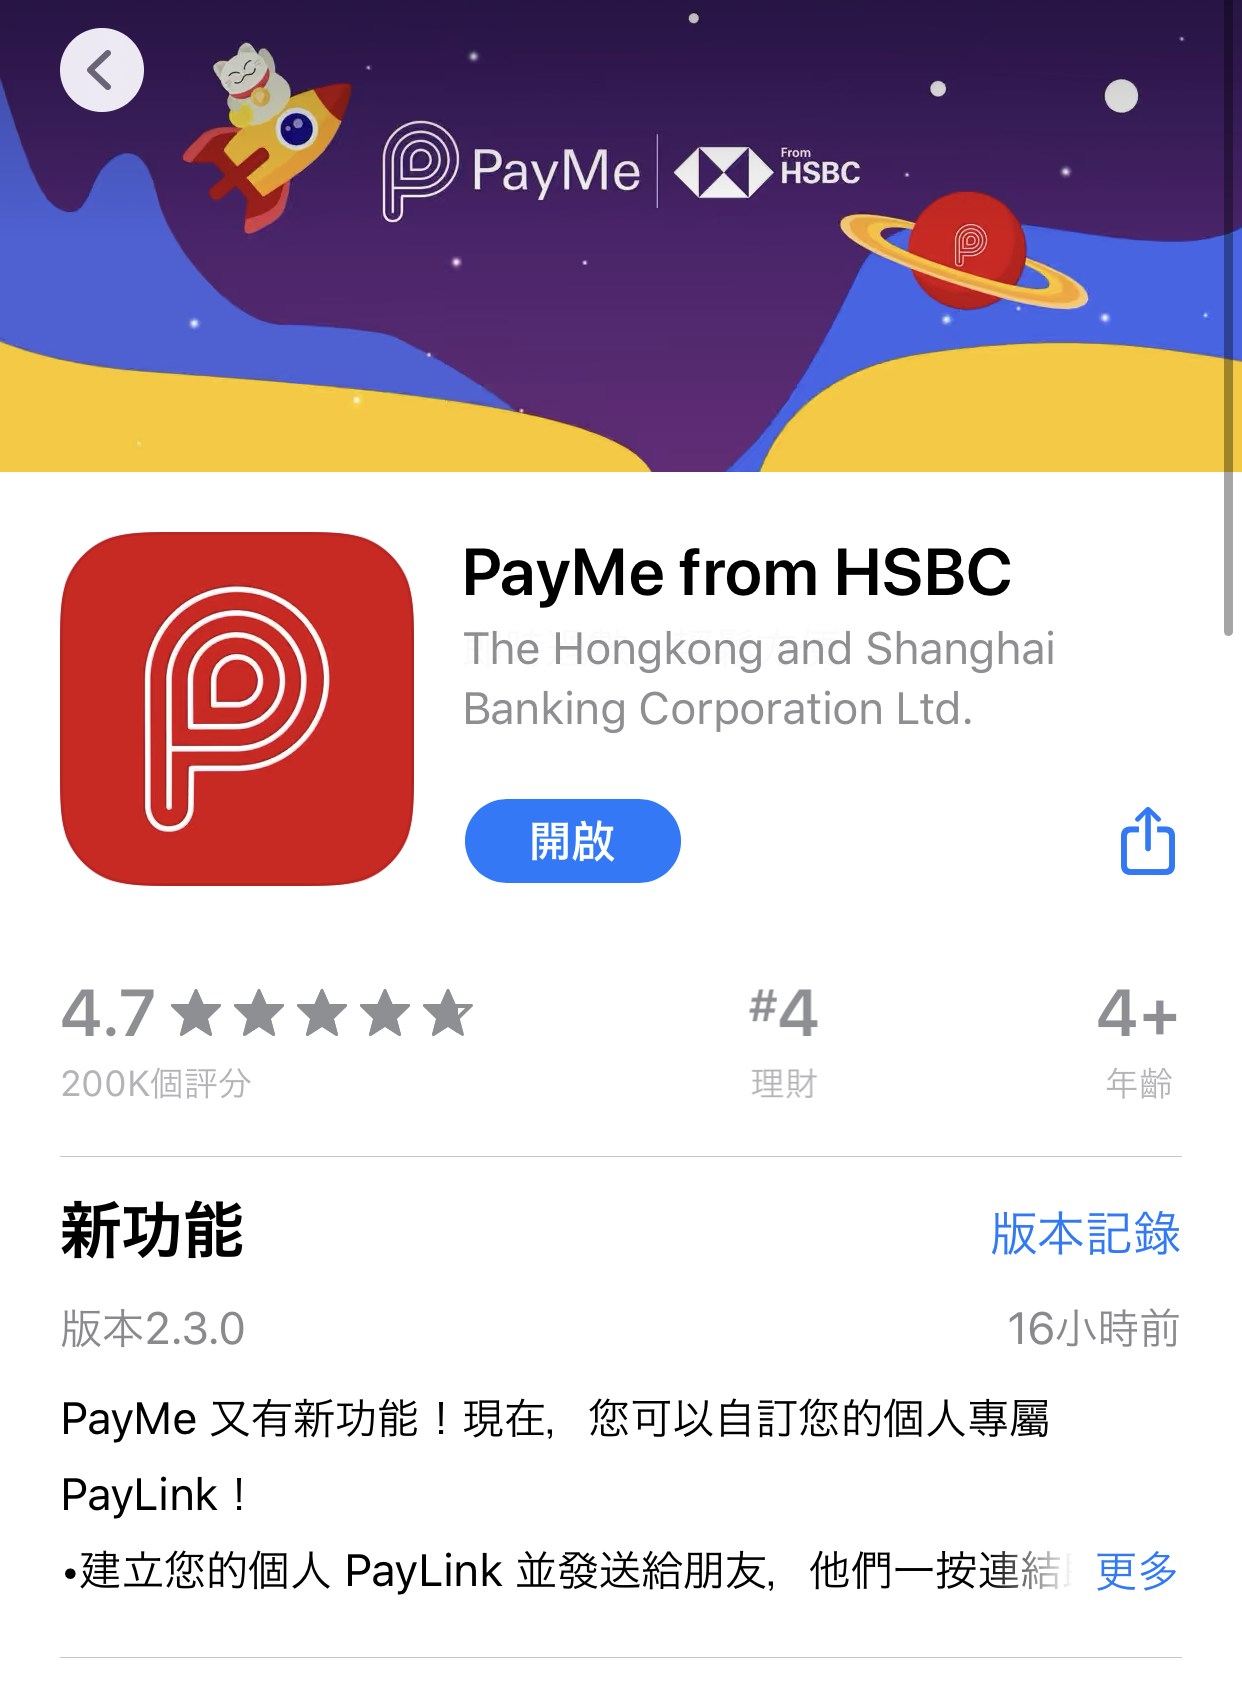 HSBC Payme PayLink